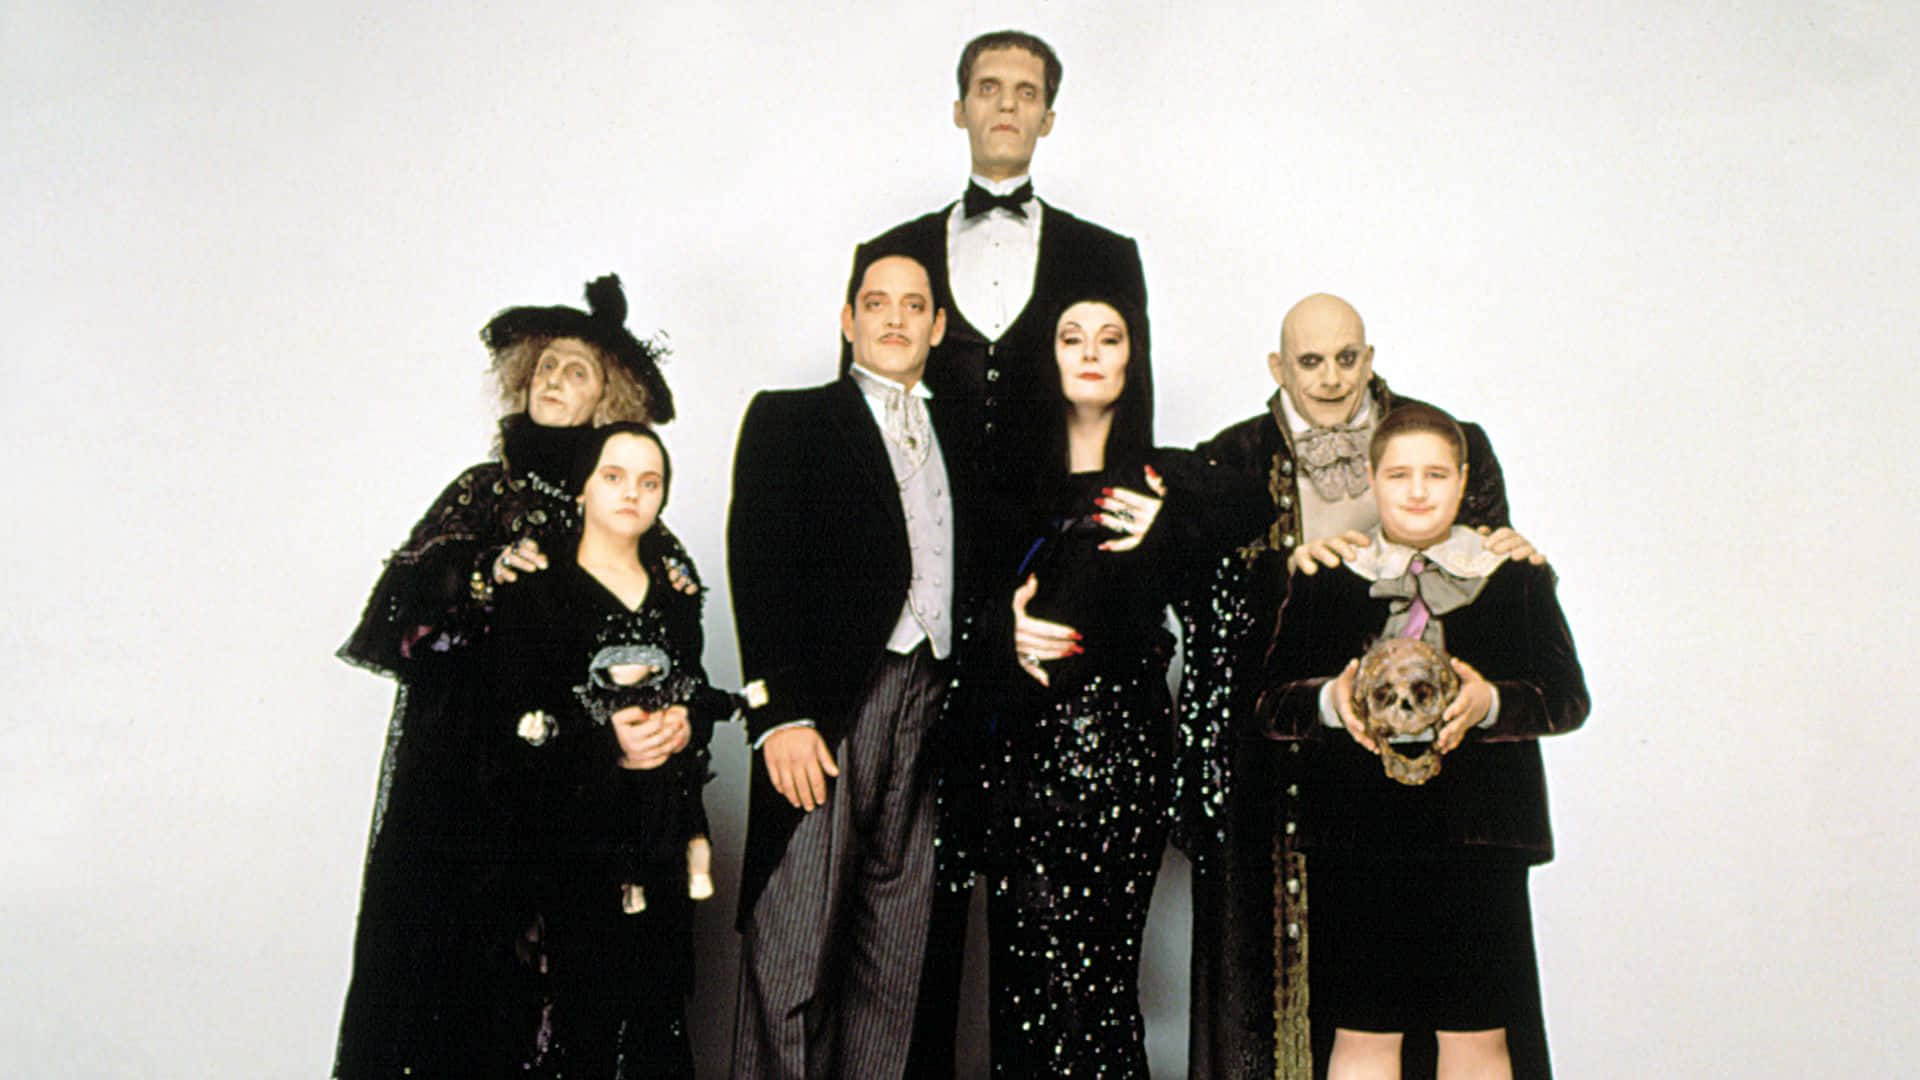 Laicónica Familia Addams